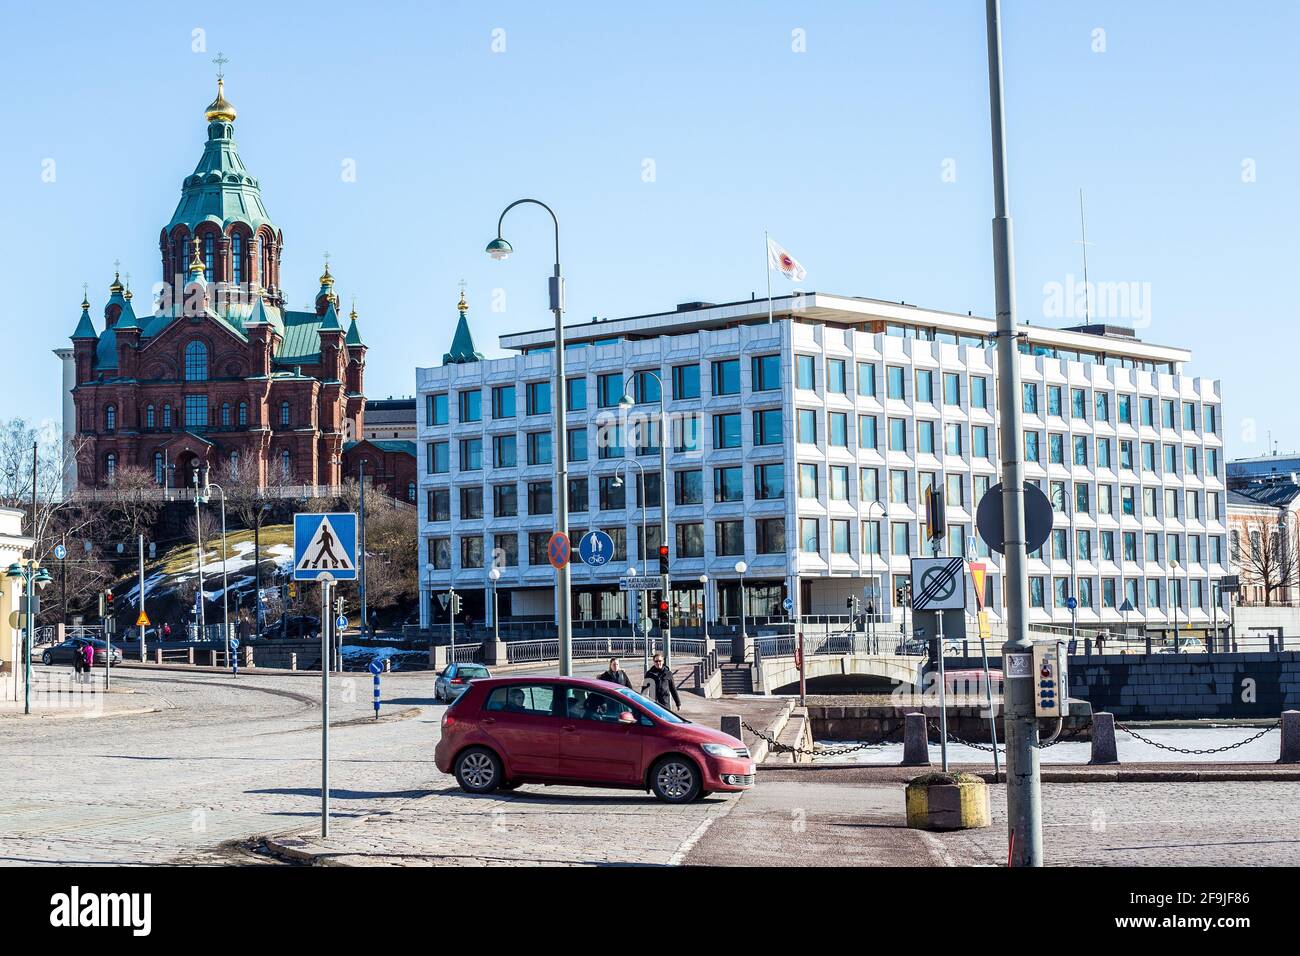 Helsinki, Finlandia - 11 marzo 2017: Vista della Chiesa ortodossa Uspenski nel centro di Helsinki in un giorno di sole Foto Stock